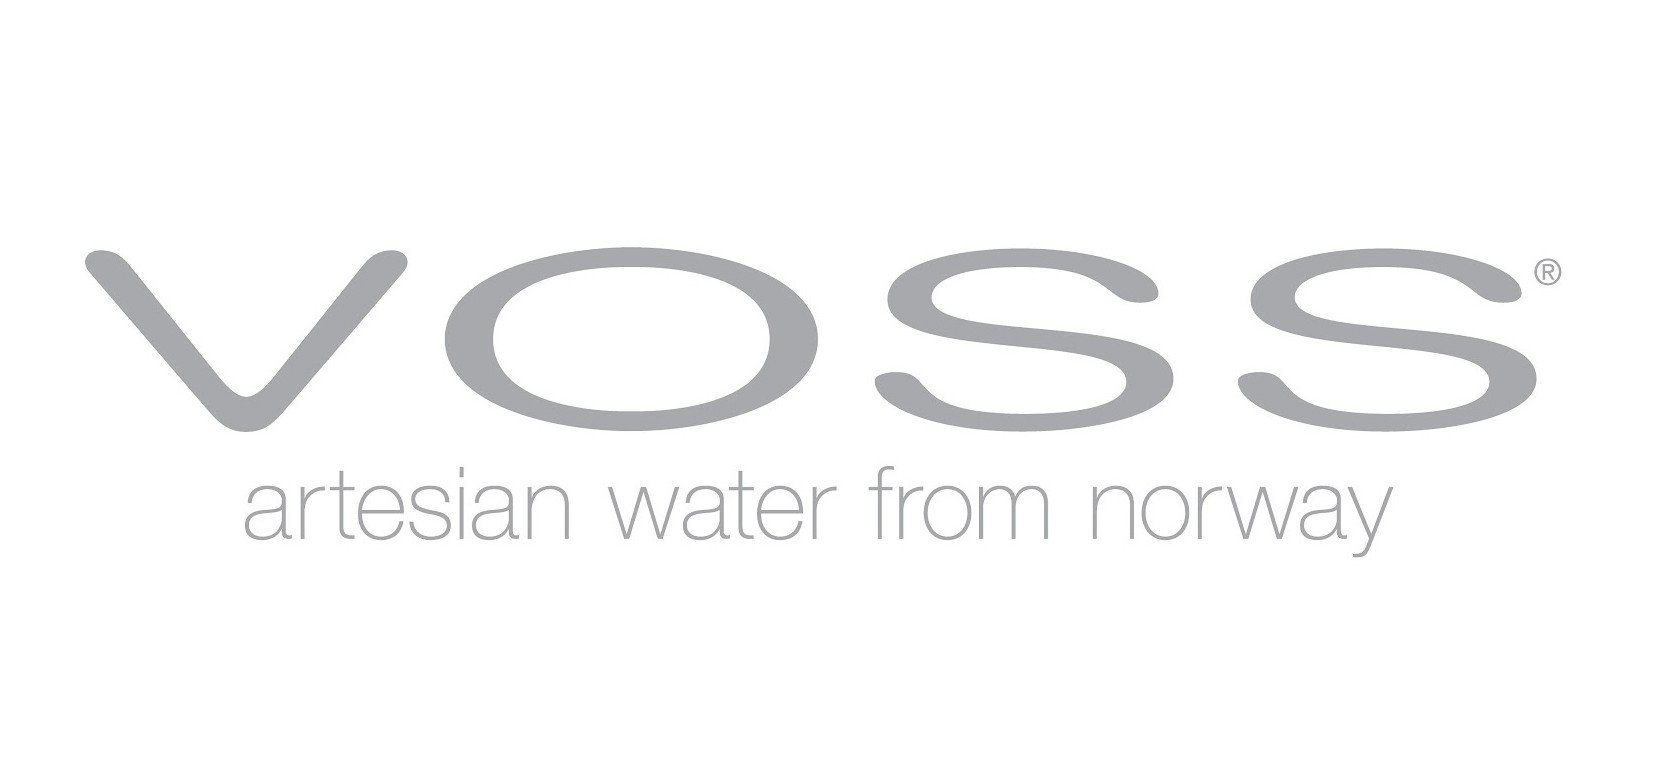 Voss Water Logo